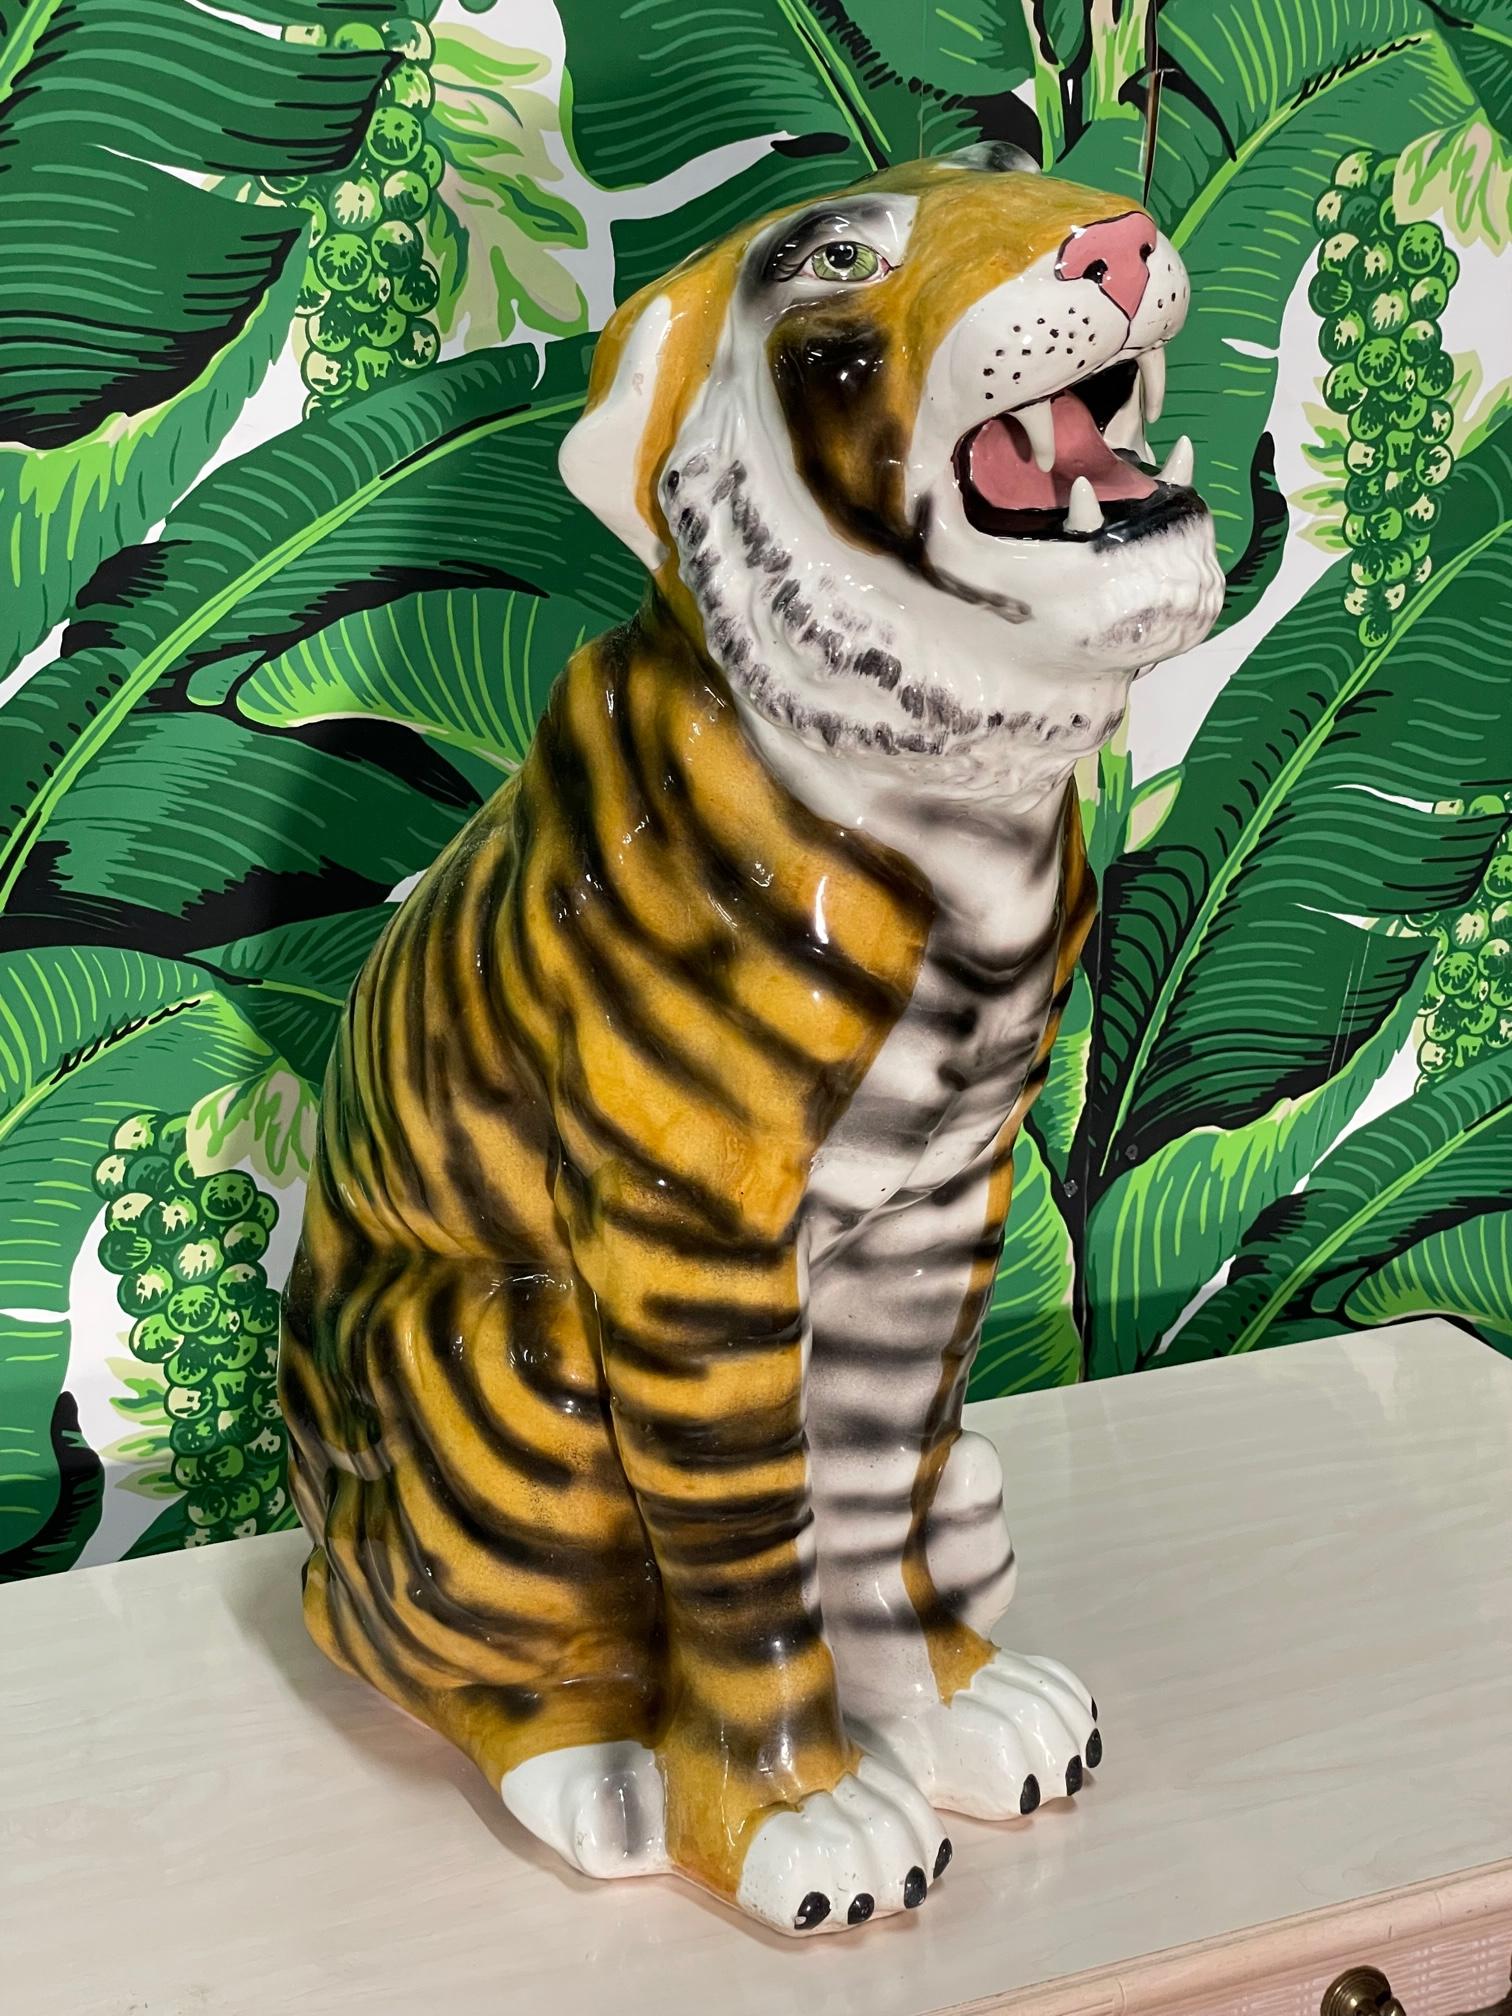 Le grand tigre en céramique mesure plus de 26 pouces. Finition magnifiquement émaillée et la pose 